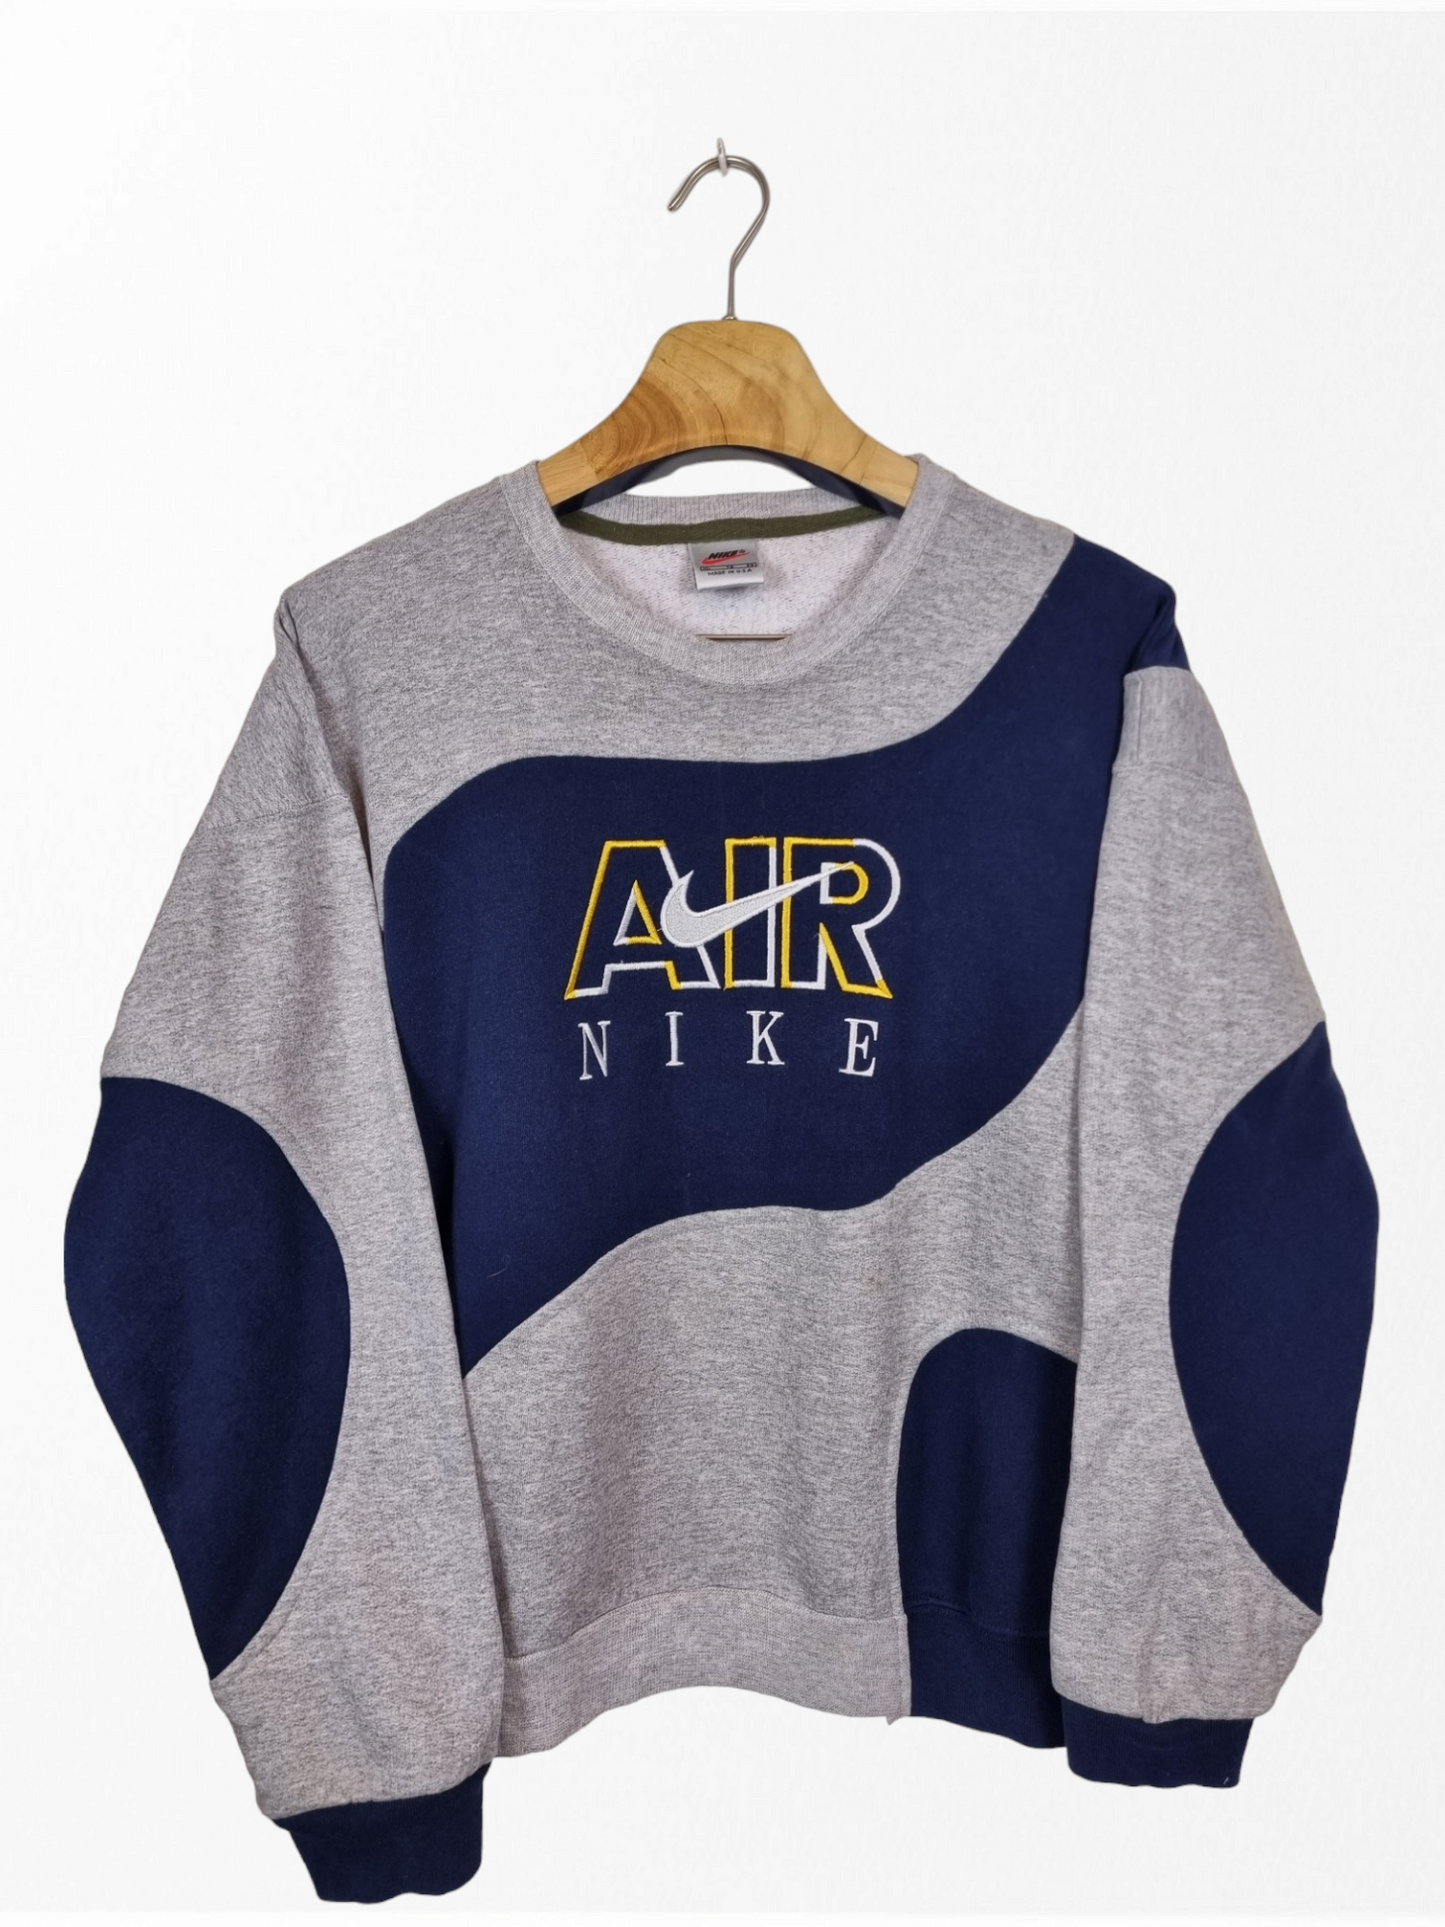 Nike AIR 90s sweater maat S/M